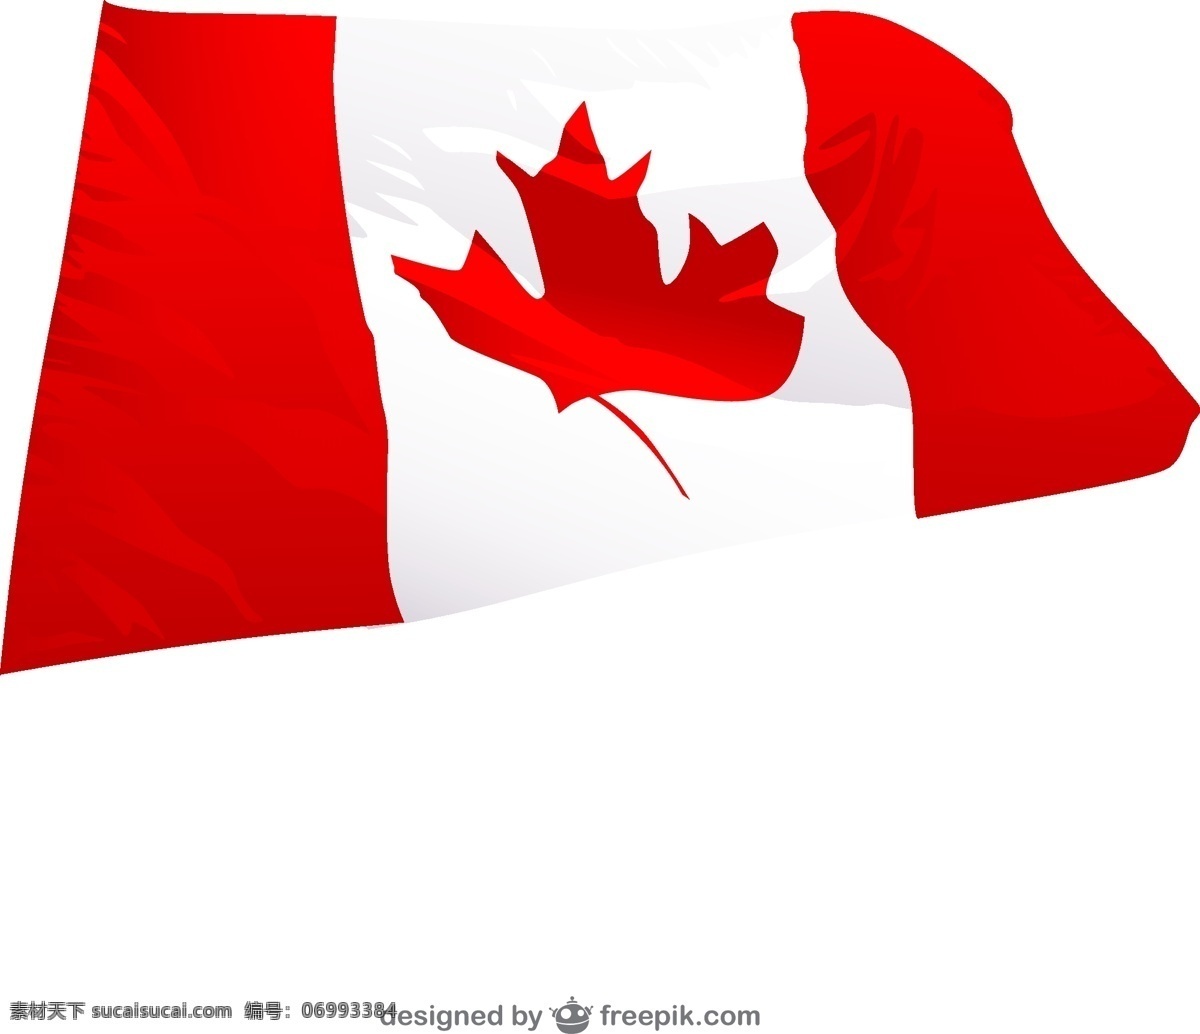 加拿大 wavingr 旗 旗帜 模板 叶 波浪 红色 图形 三维 布局 图形设计 白色 符号 枫叶 天 爱国 枫